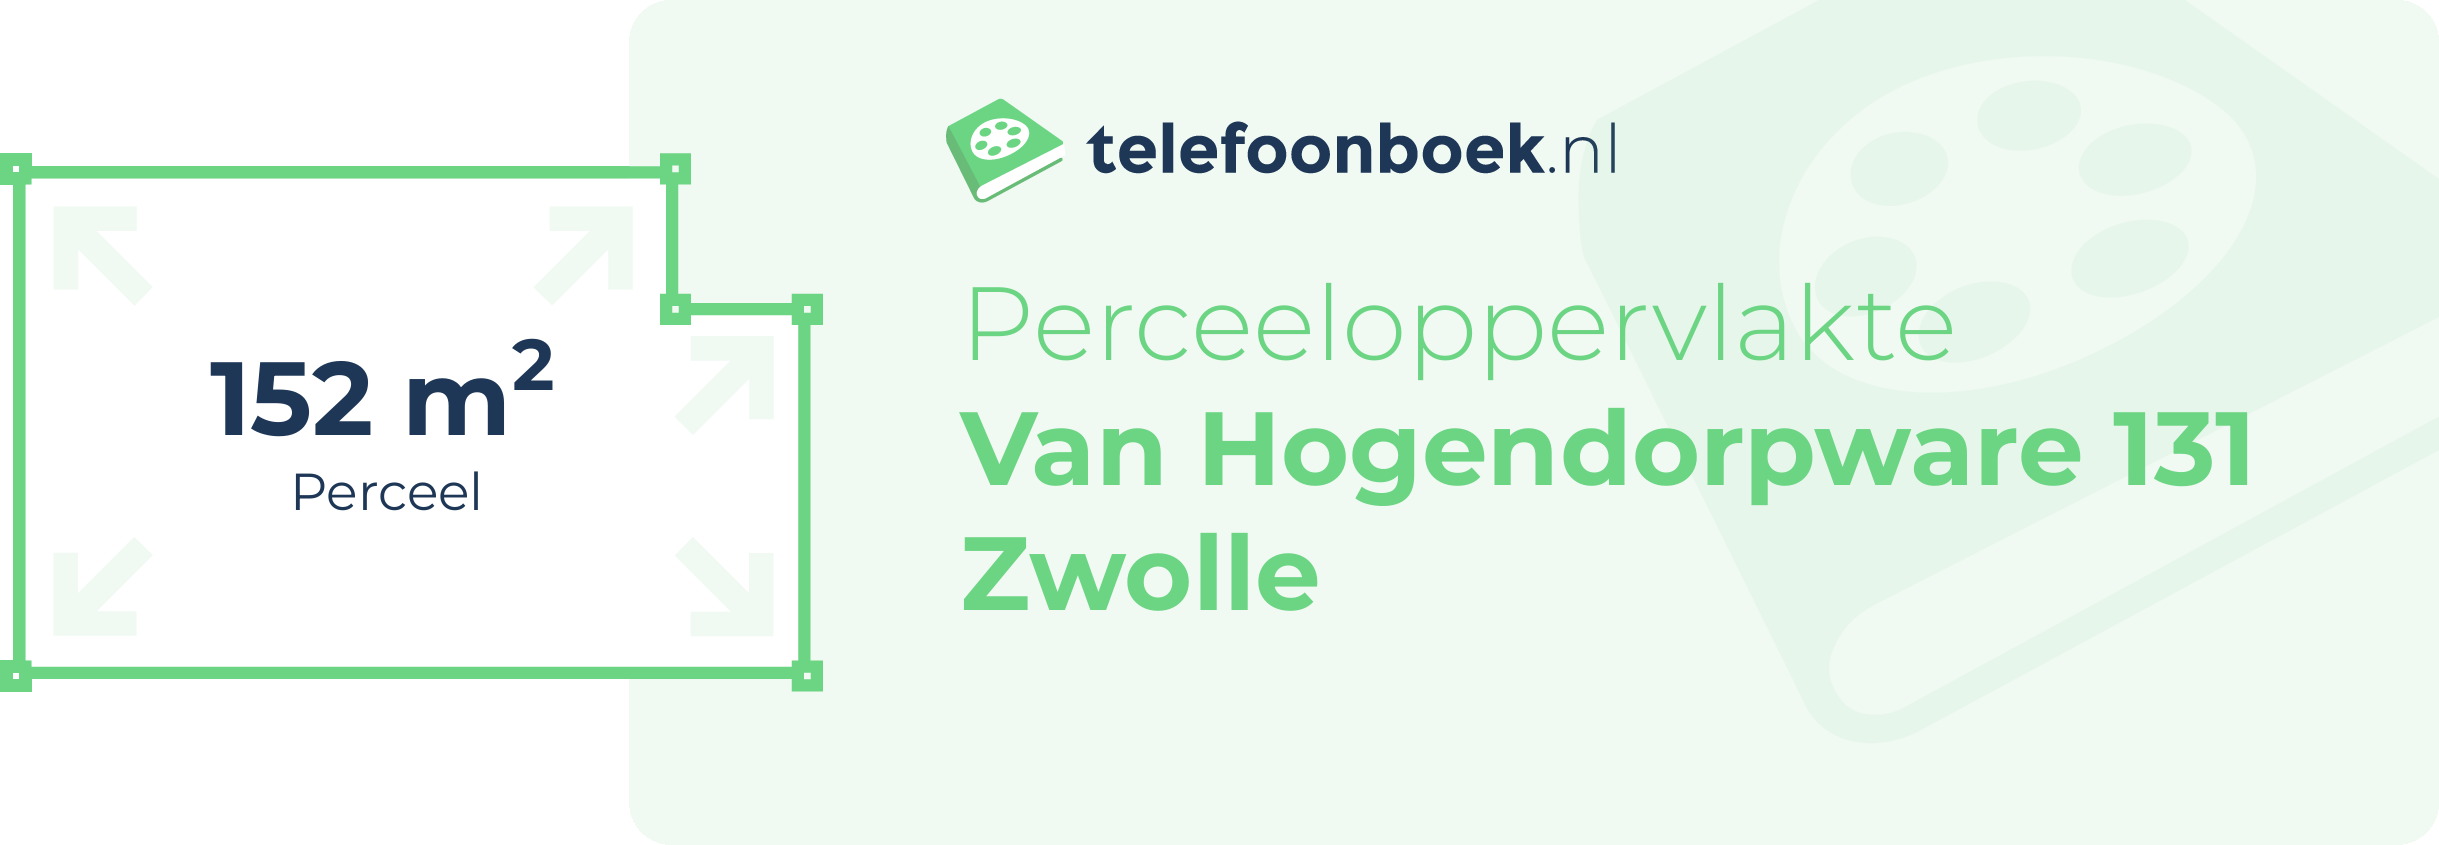 Perceeloppervlakte Van Hogendorpware 131 Zwolle